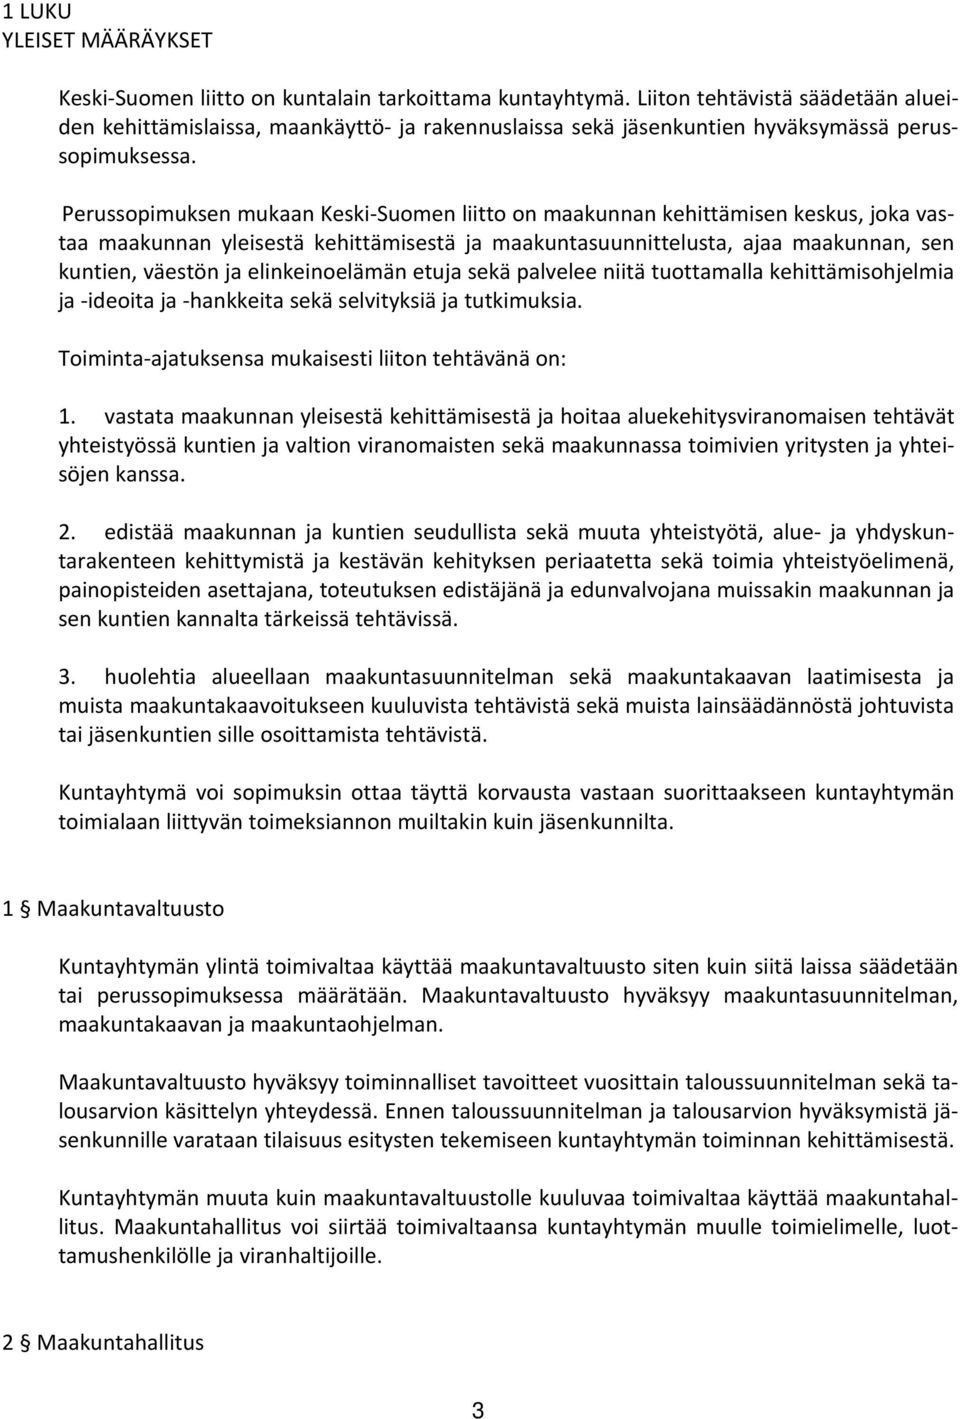 Perussopimuksen mukaan Keski Suomen liitto on maakunnan kehittämisen keskus, joka vastaa maakunnan yleisestä kehittämisestä ja maakuntasuunnittelusta, ajaa maakunnan, sen kuntien, väestön ja